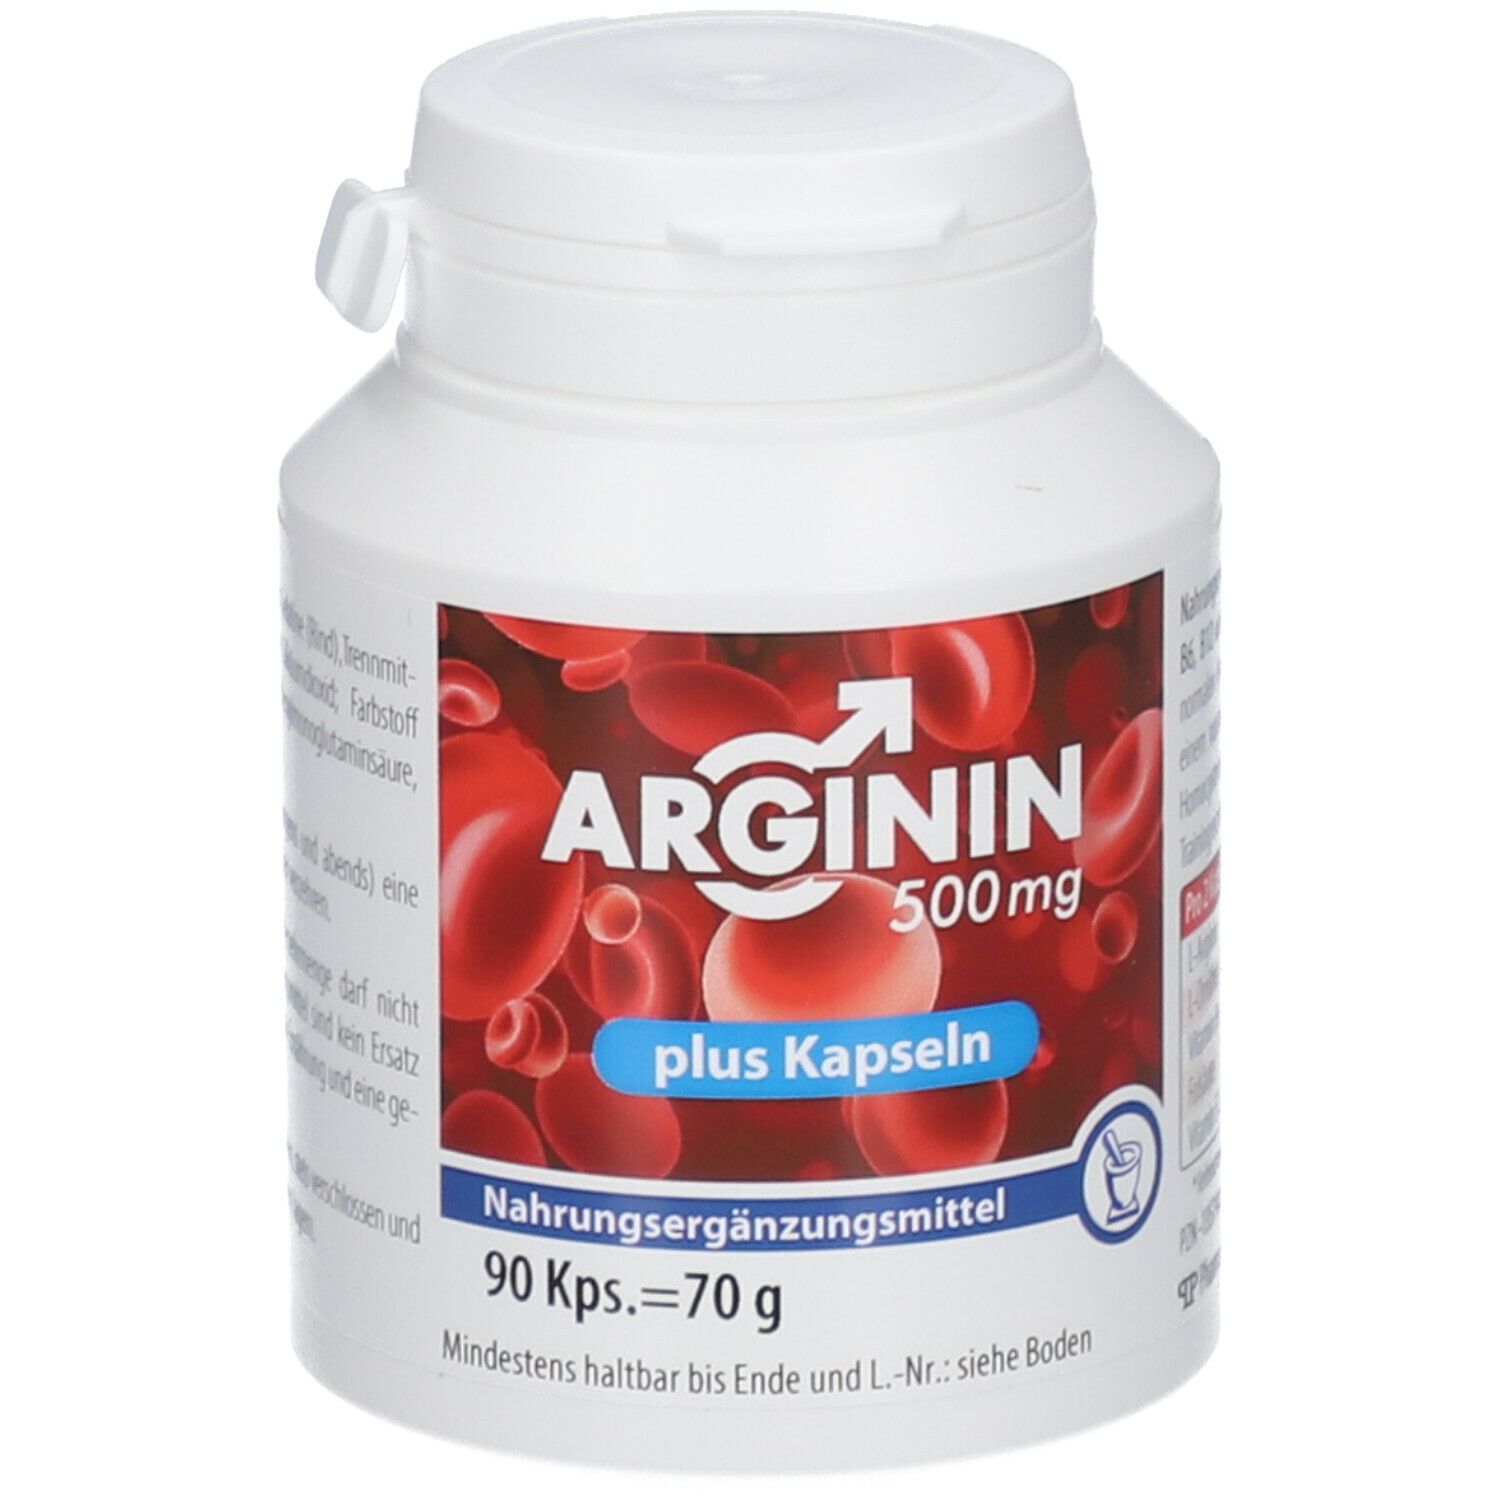 Arginin 500 mg plus Kapseln